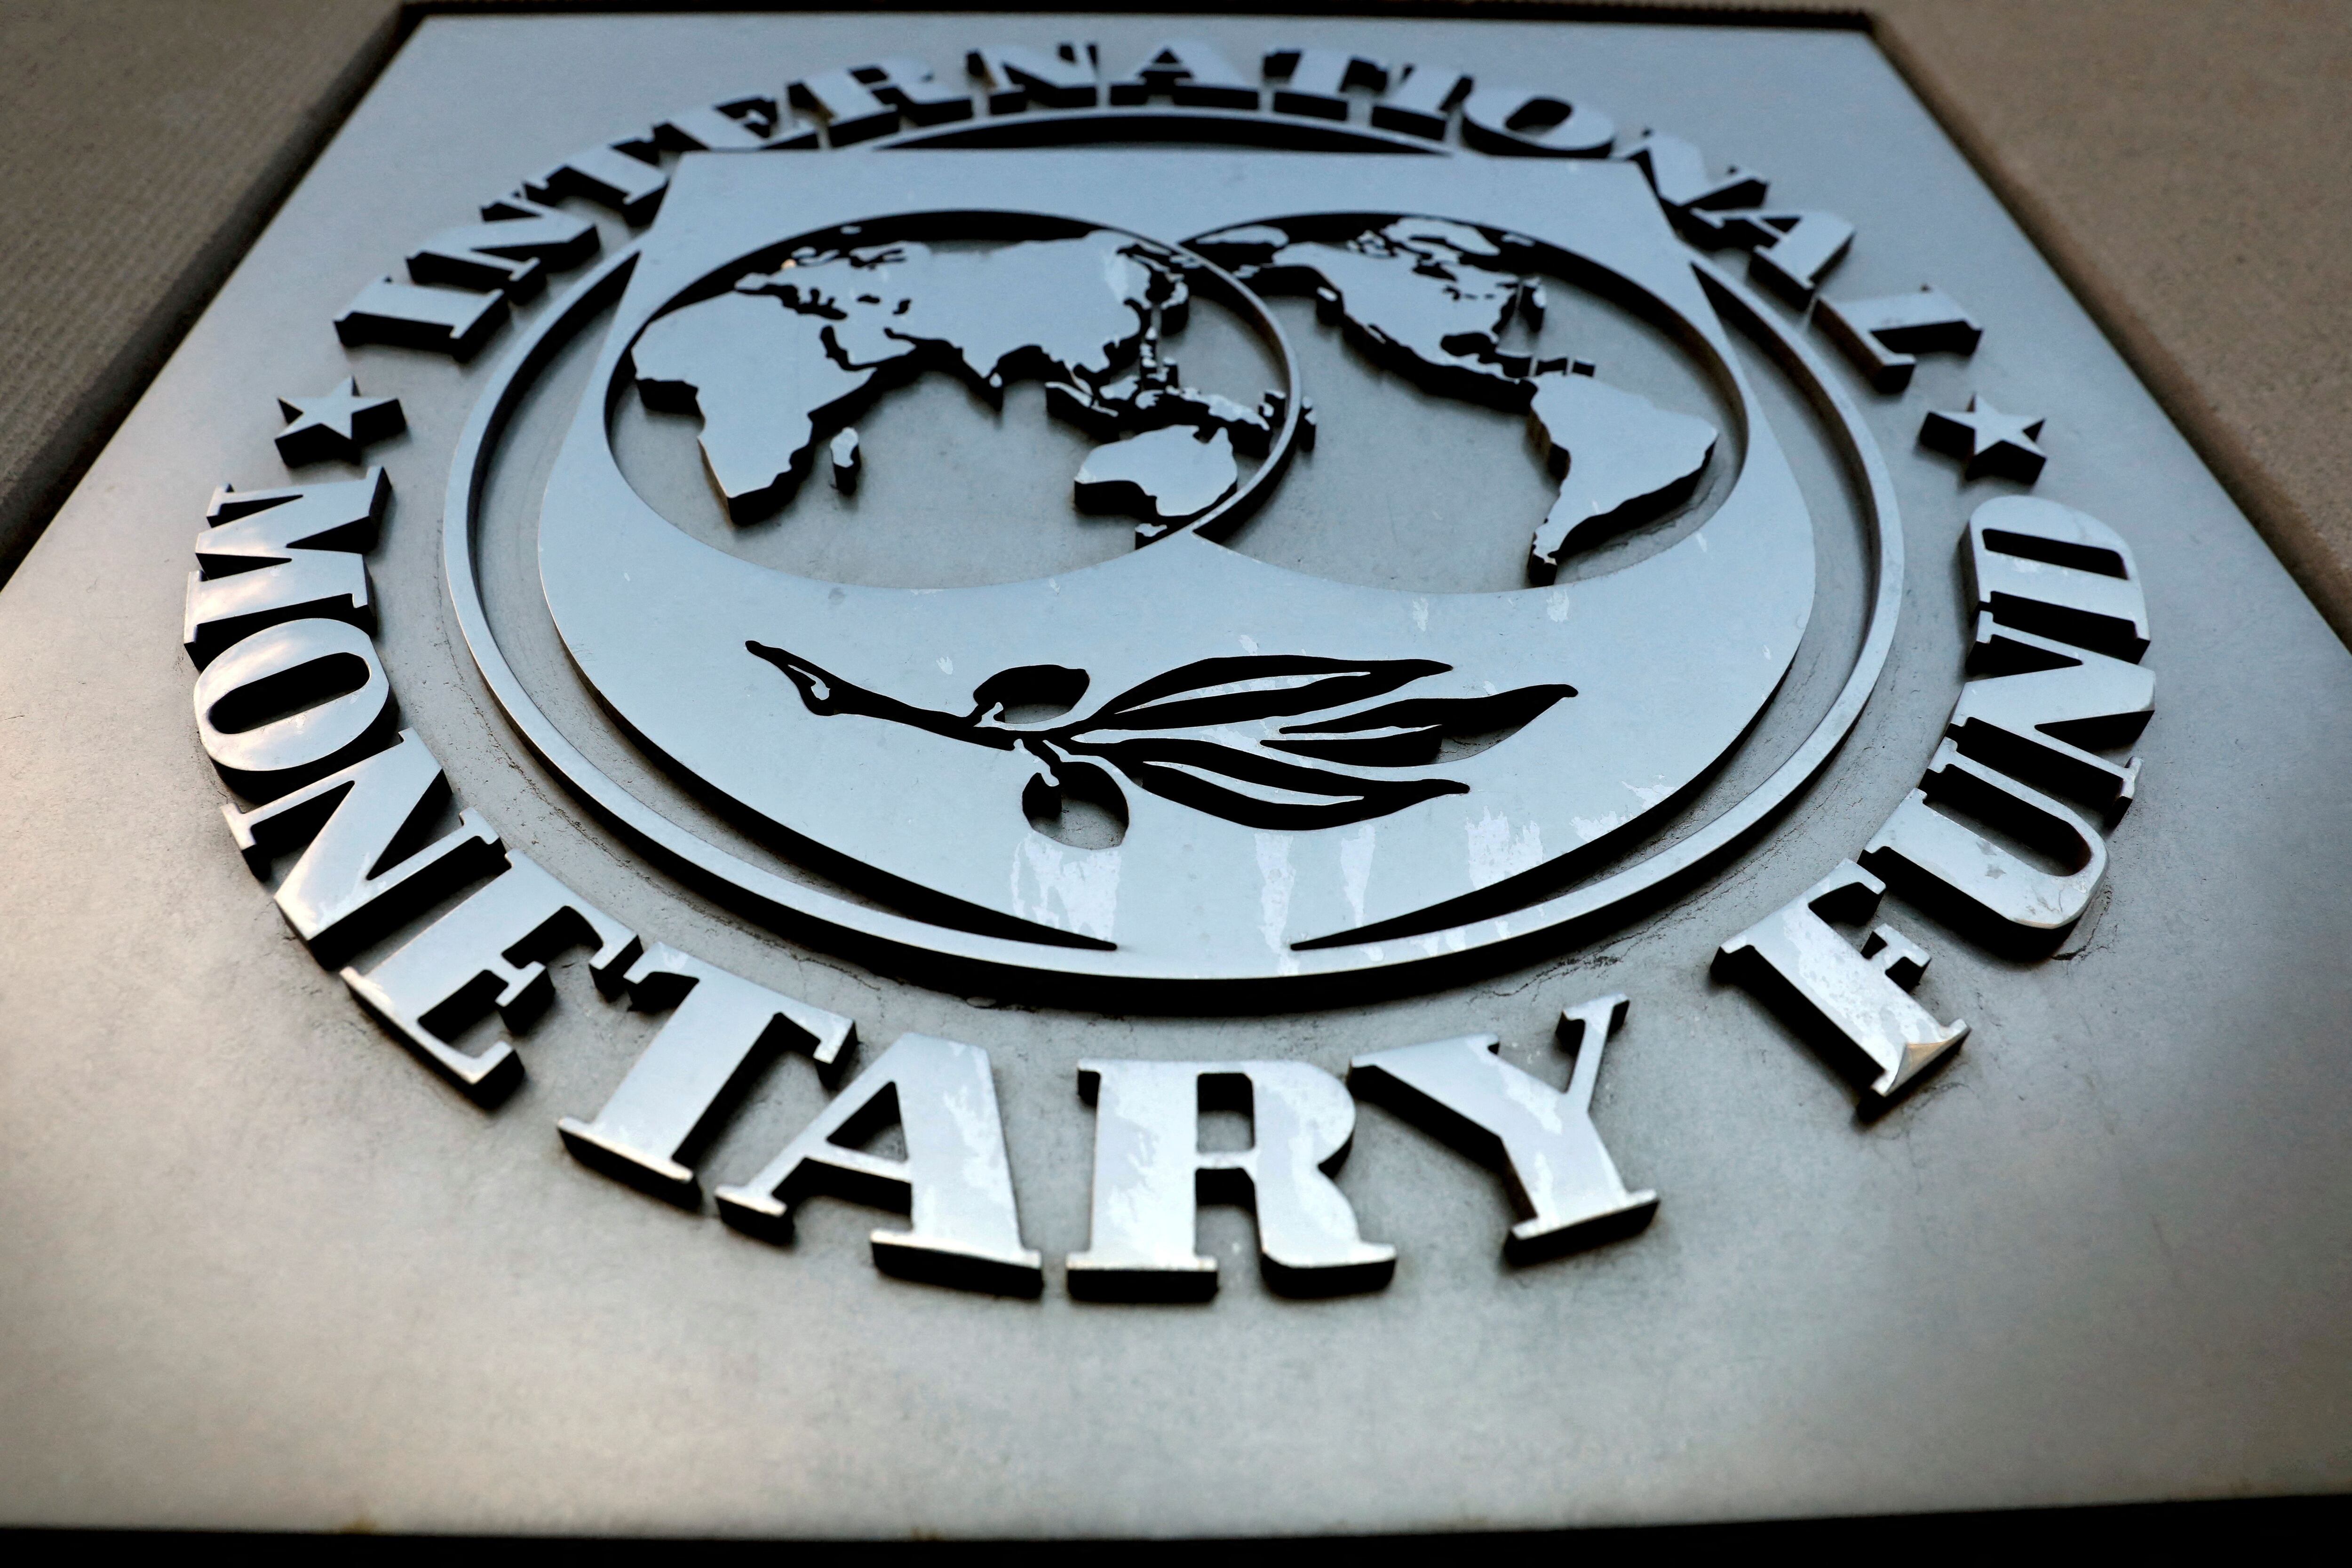 La Argentina no es el país de América latina que más acuerdos ha firmado con el Fondo Monetario Internacional (FMI), ni el que tiene el crédito actual más grande de la región (Reuters)